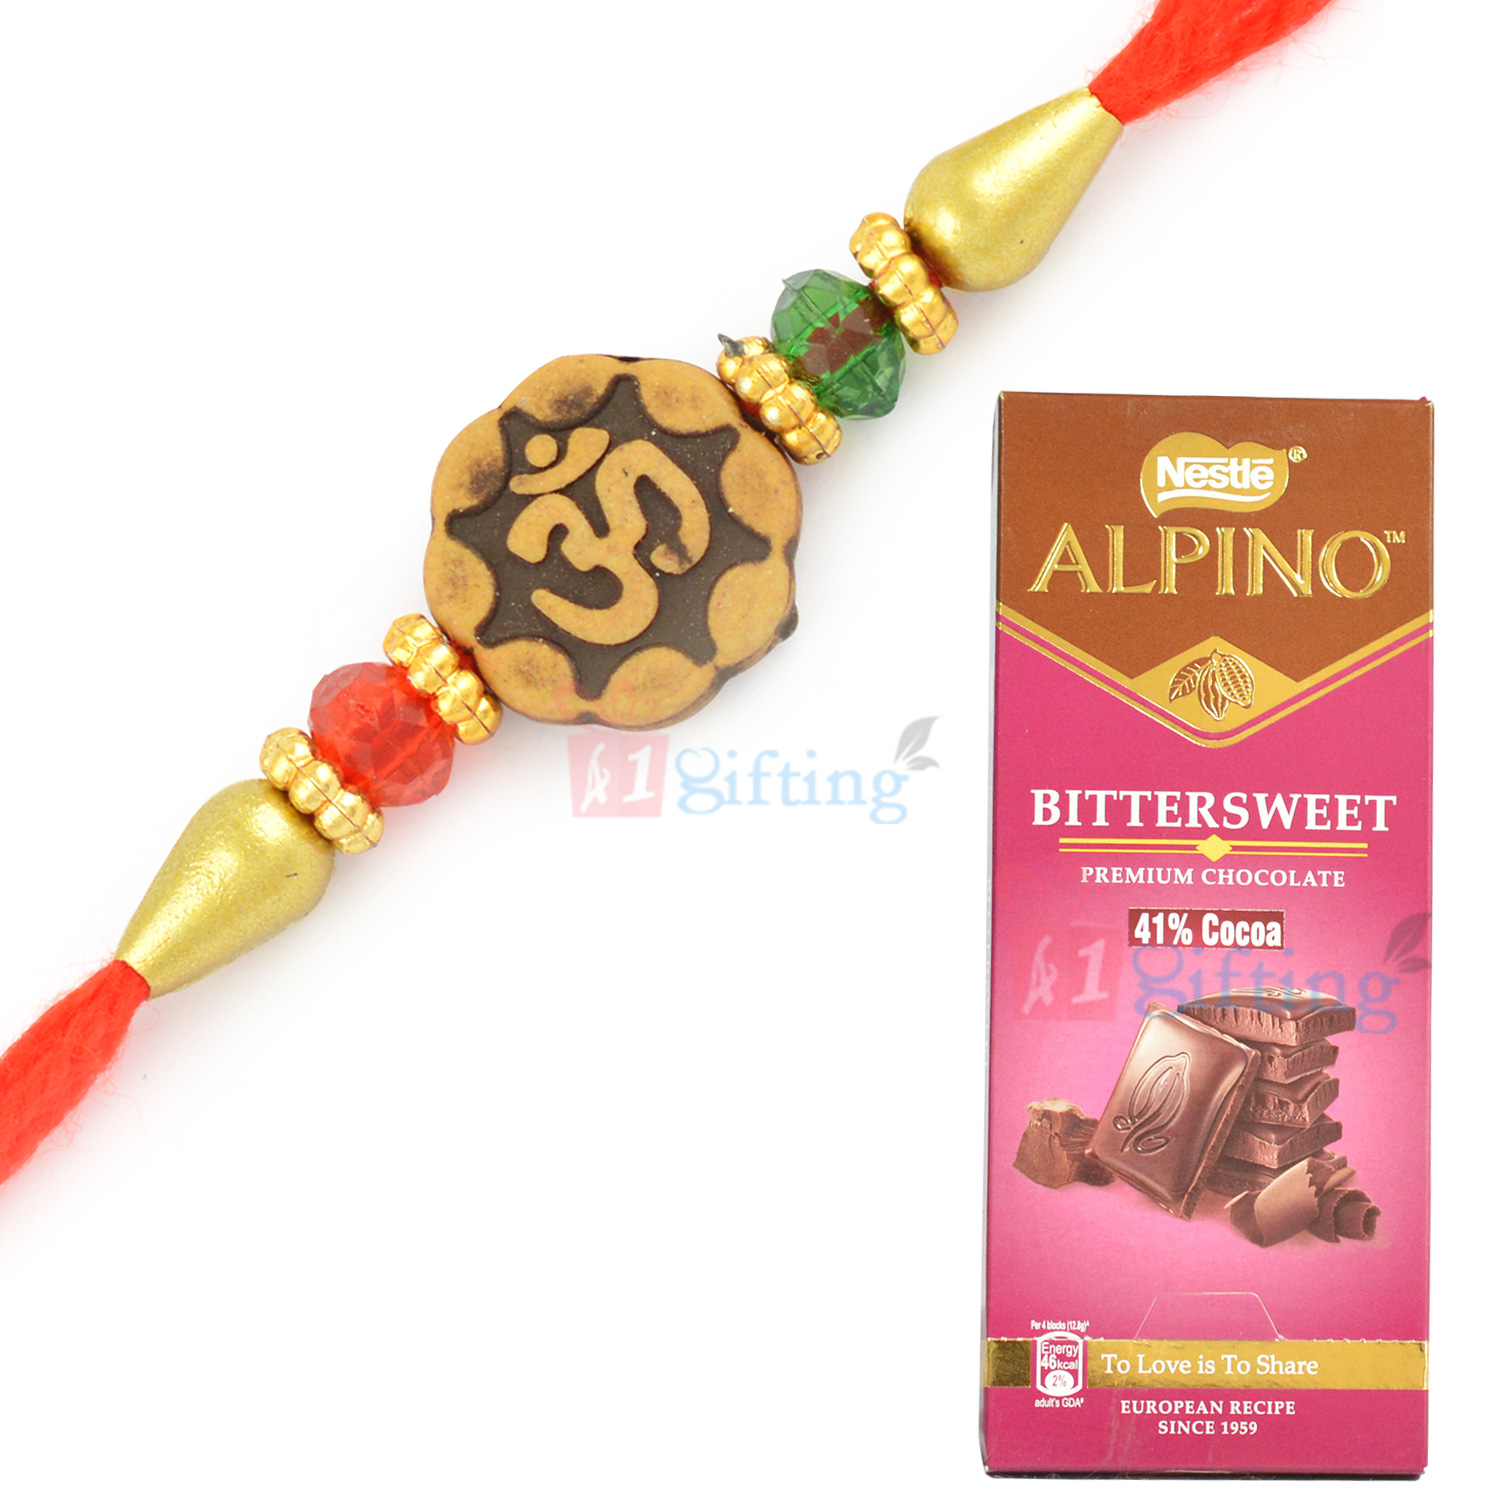 Alpino Bittersweet Premium Chocolate and Auspicious OM Rakhi